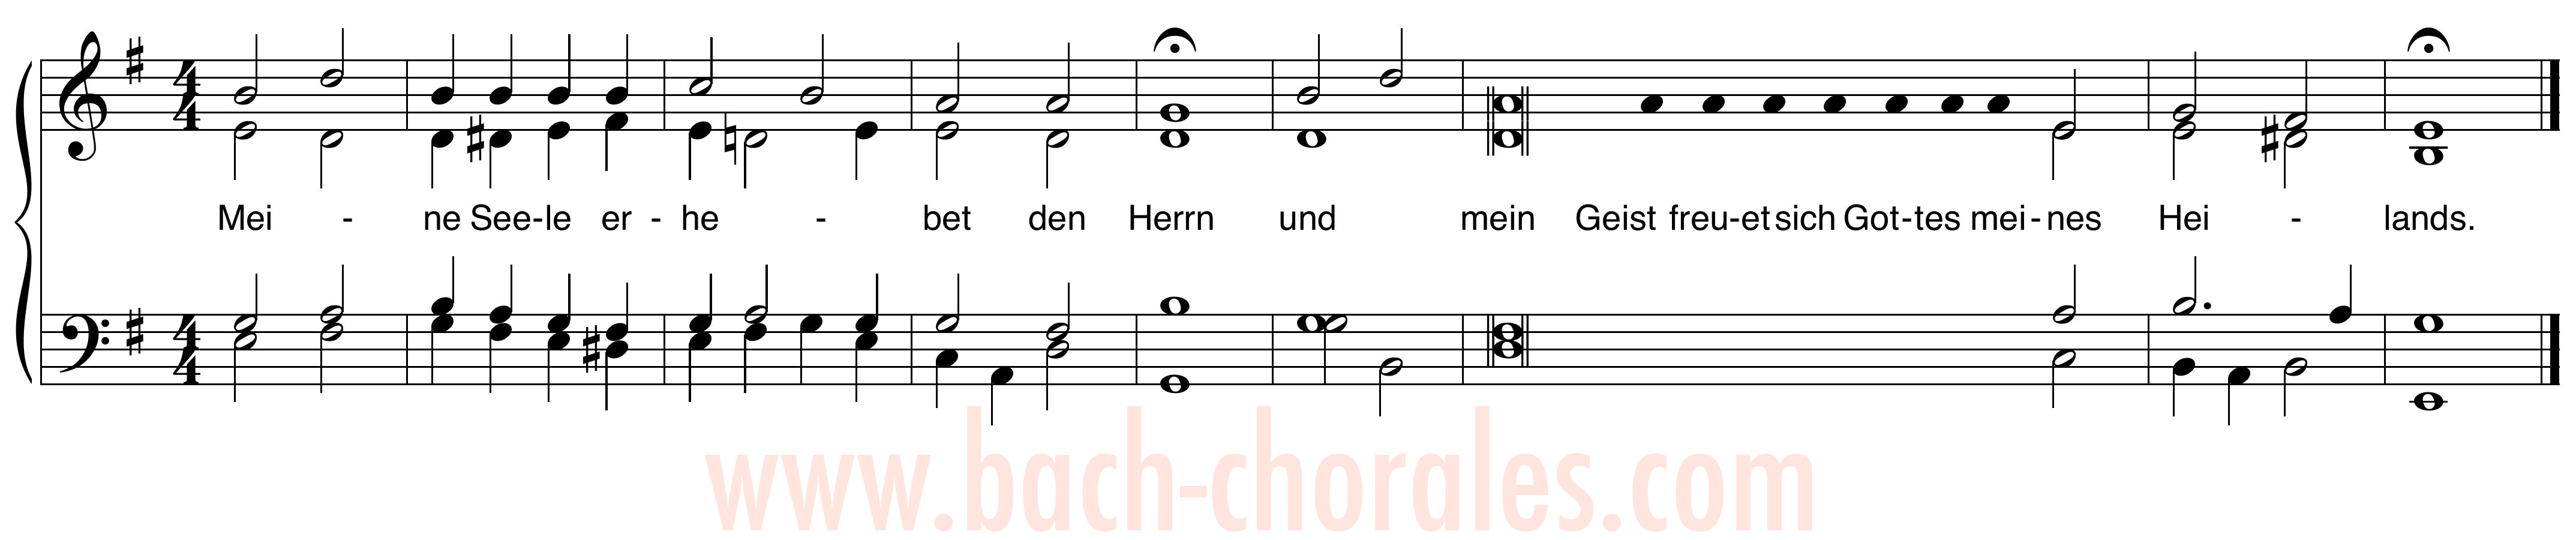 notenbeeld BWV 324 op https://www.bach-chorales.com/